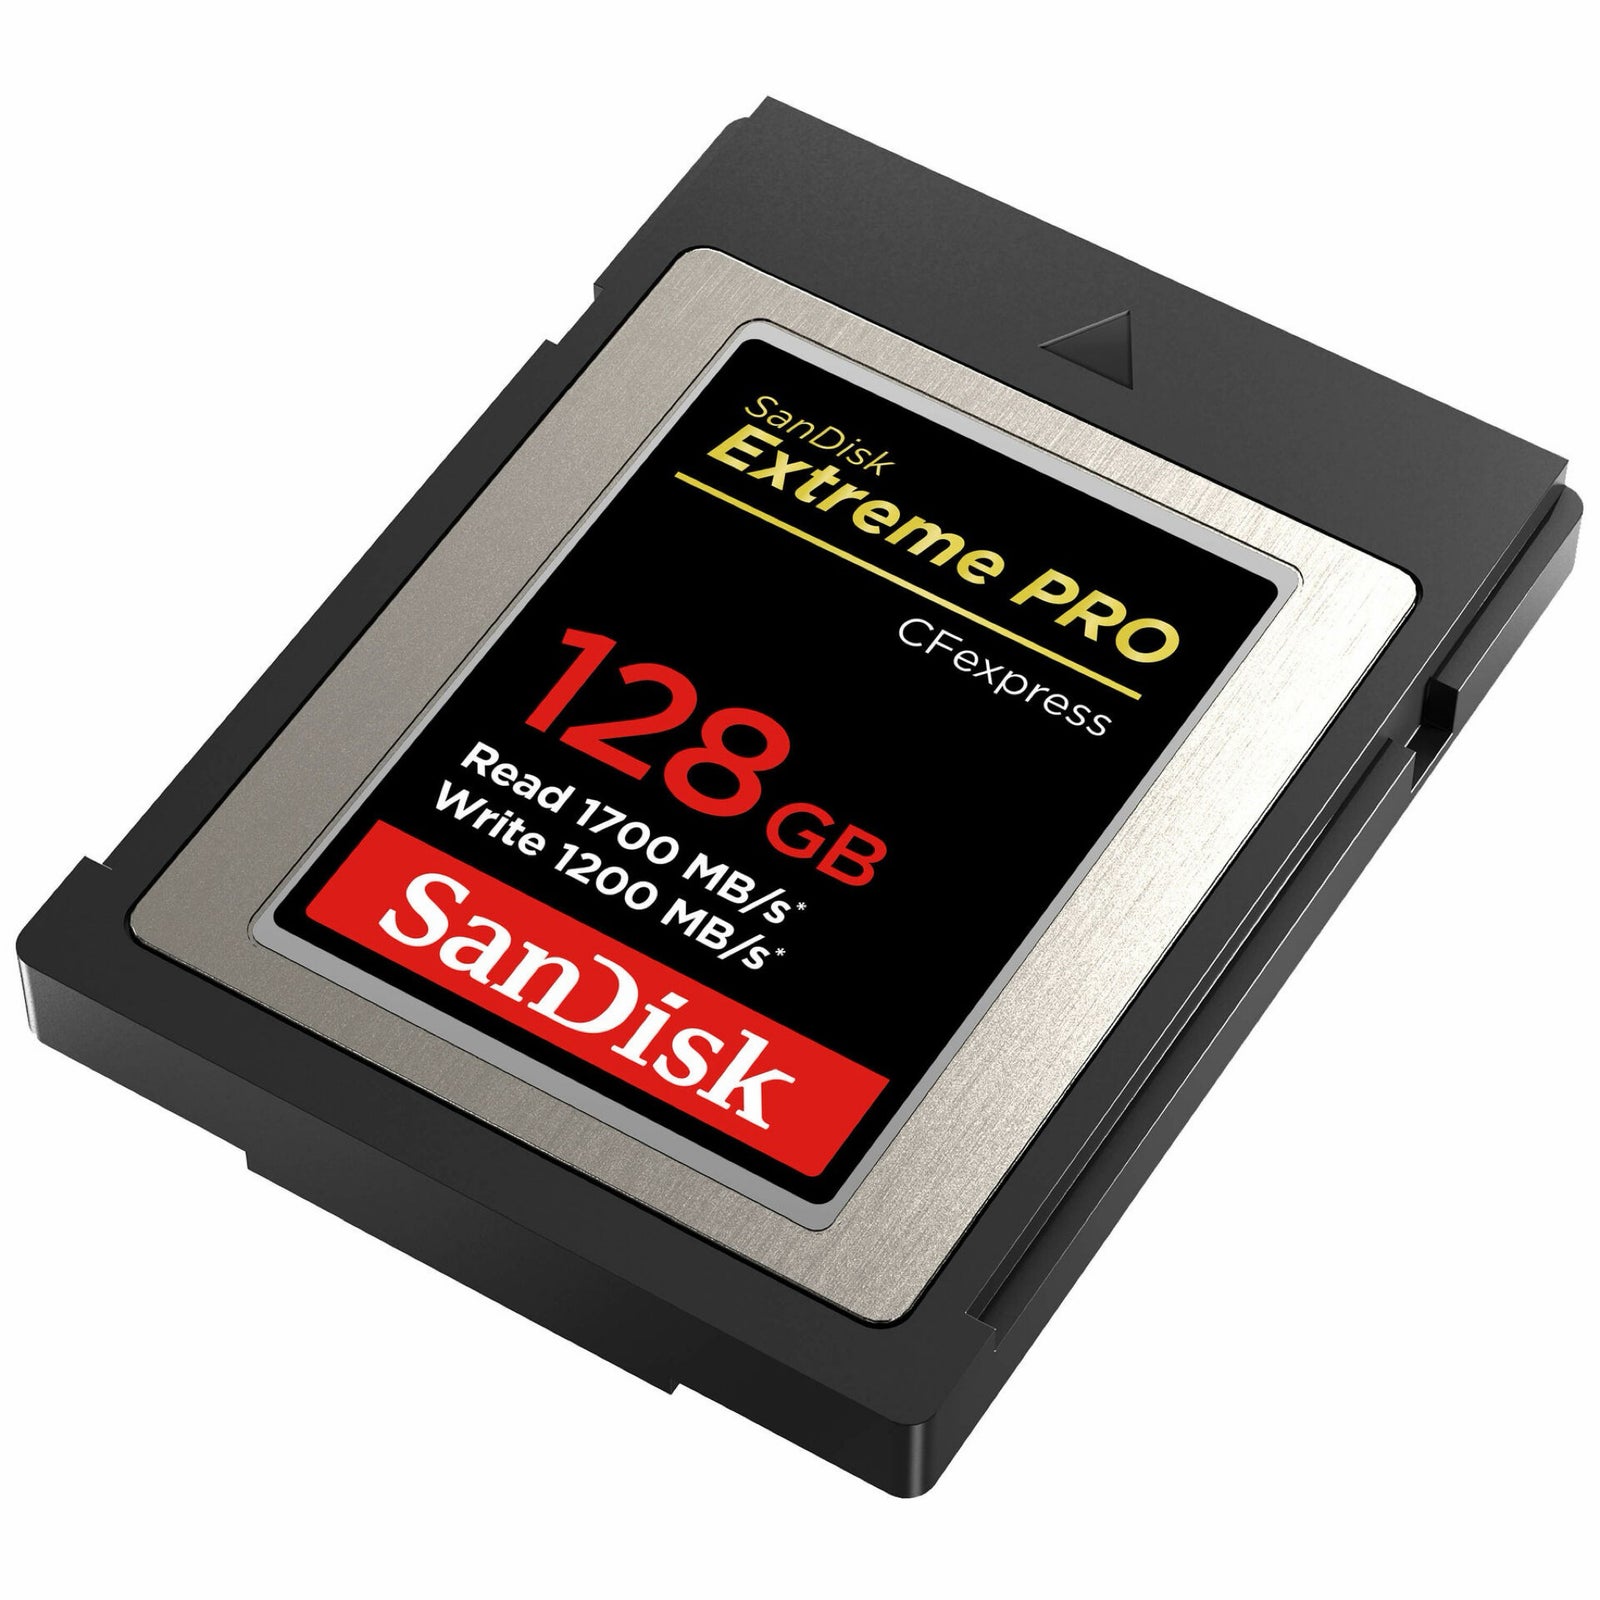 Sandisk 128Gb CF express, Sandisk, CF express